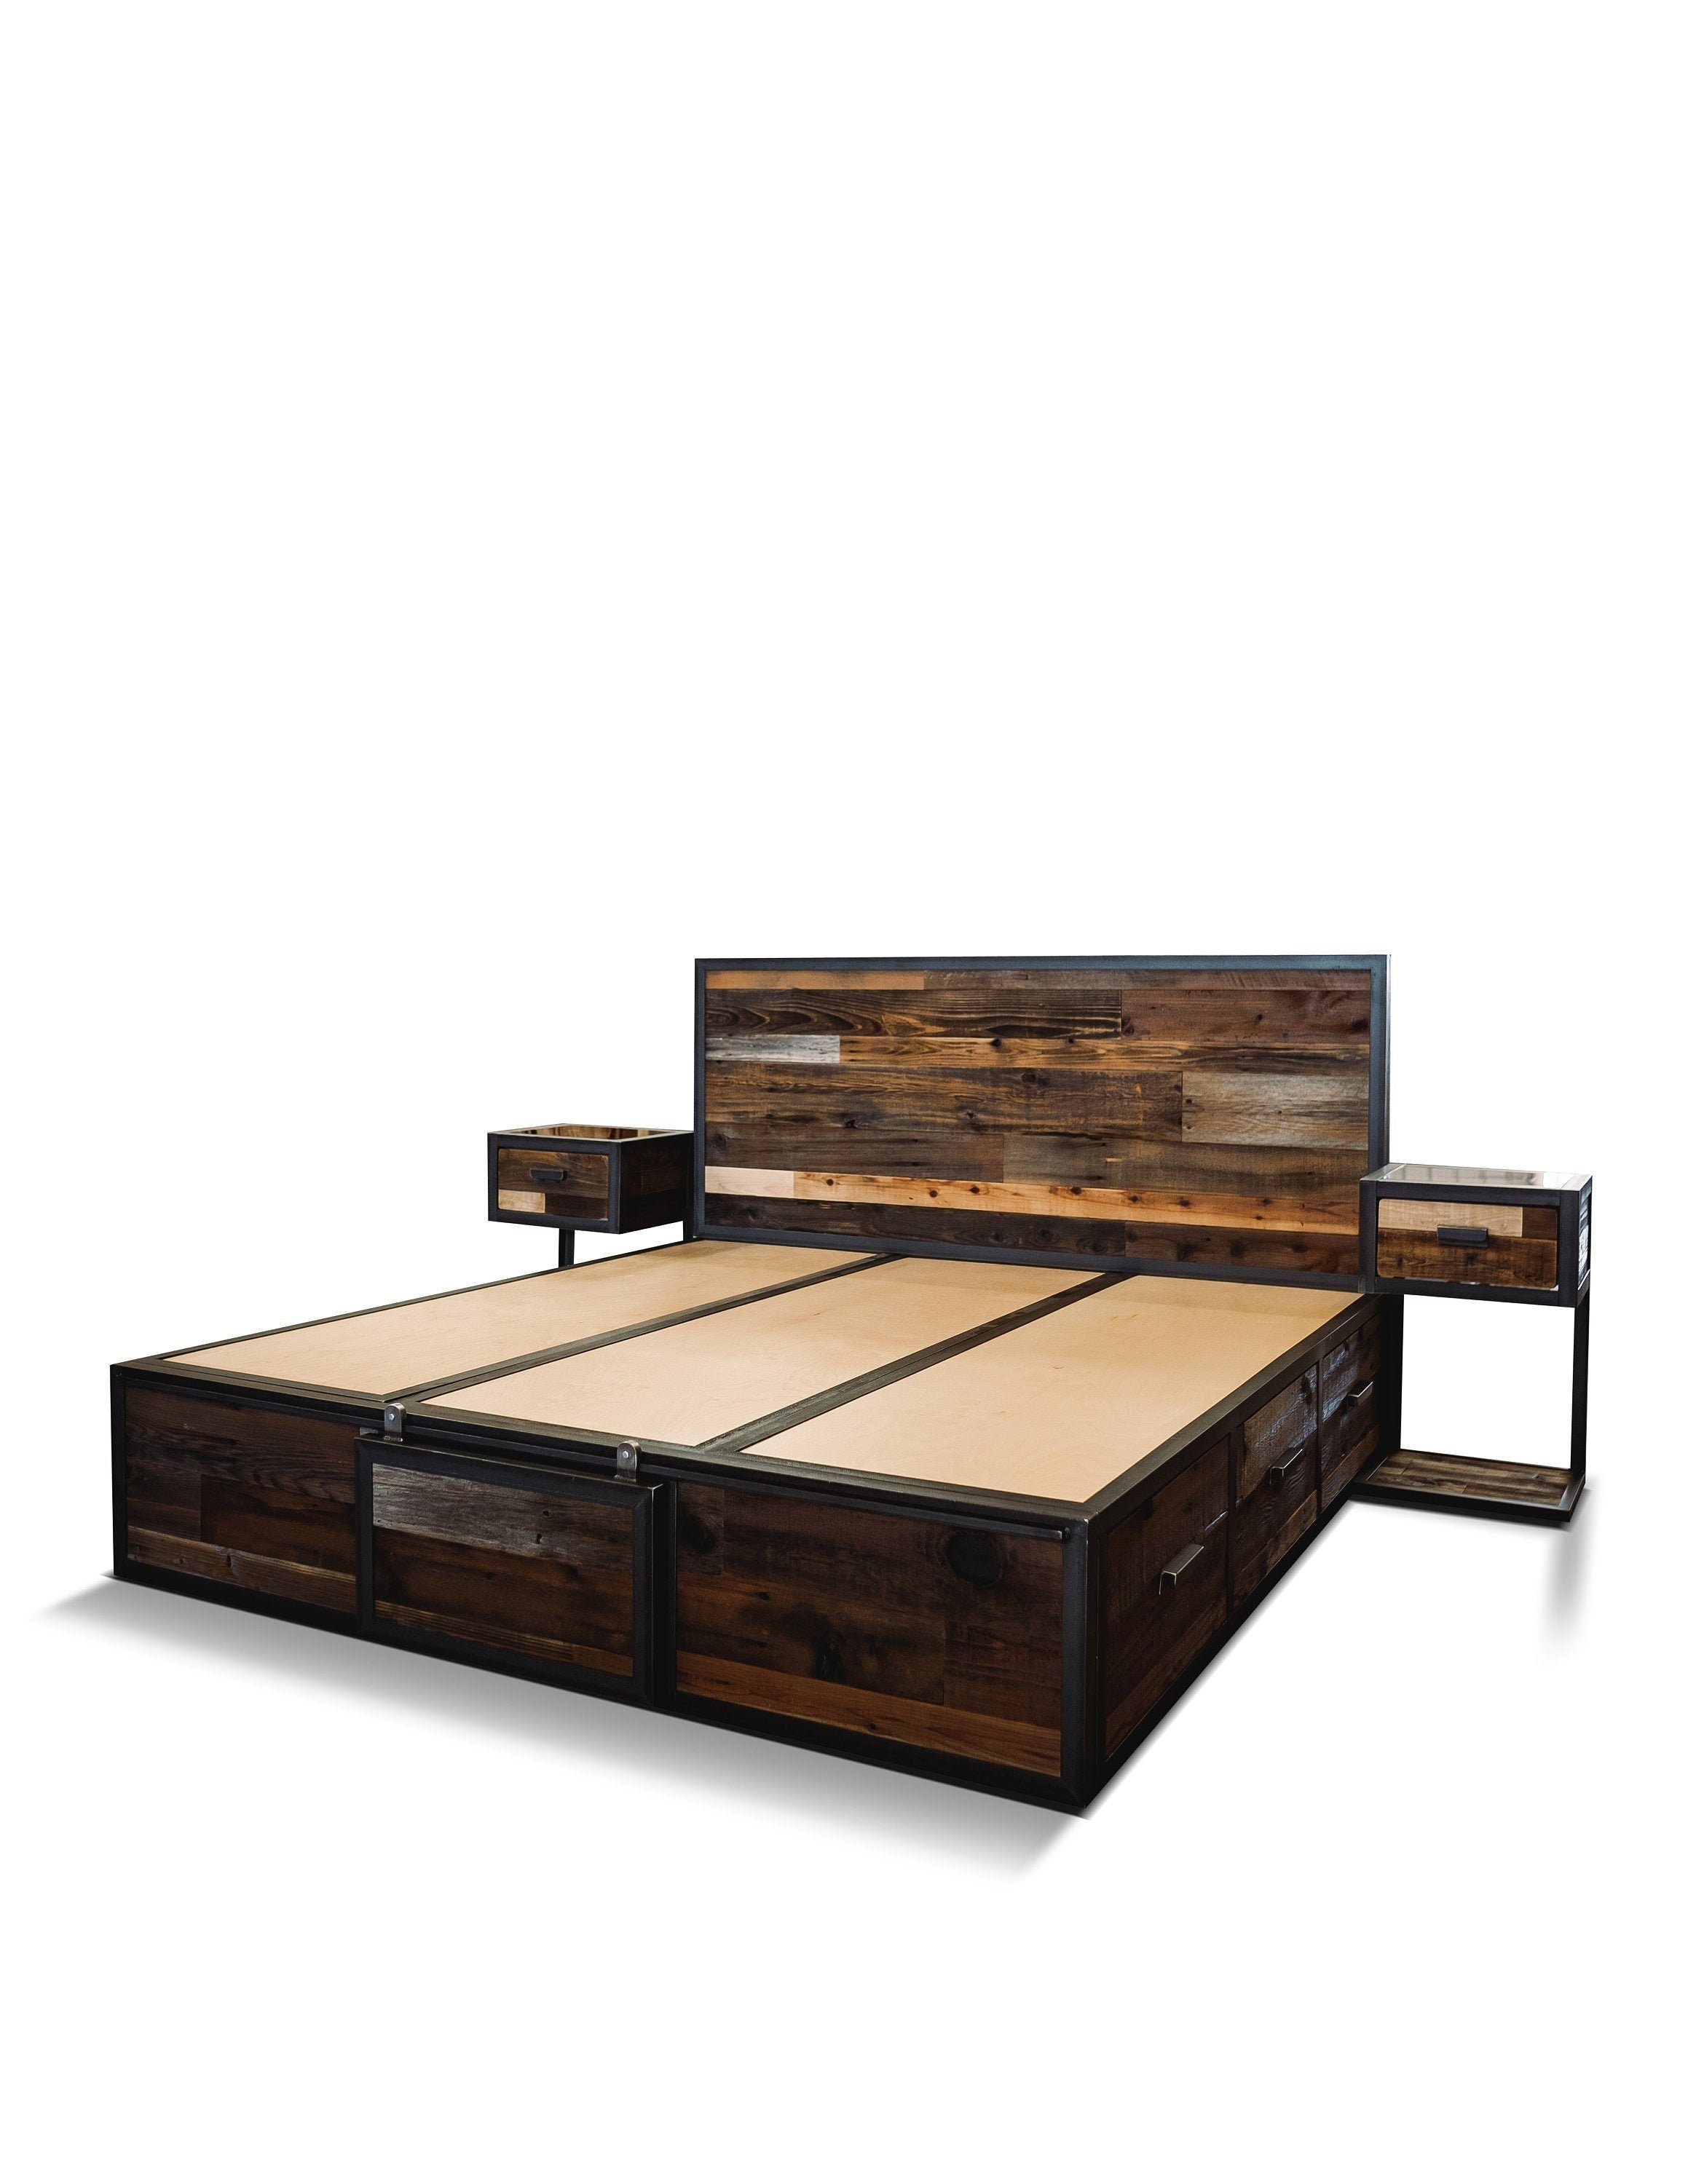 Conjunto de dormitorios de 3 piezas / cama de plataforma con | Etsy